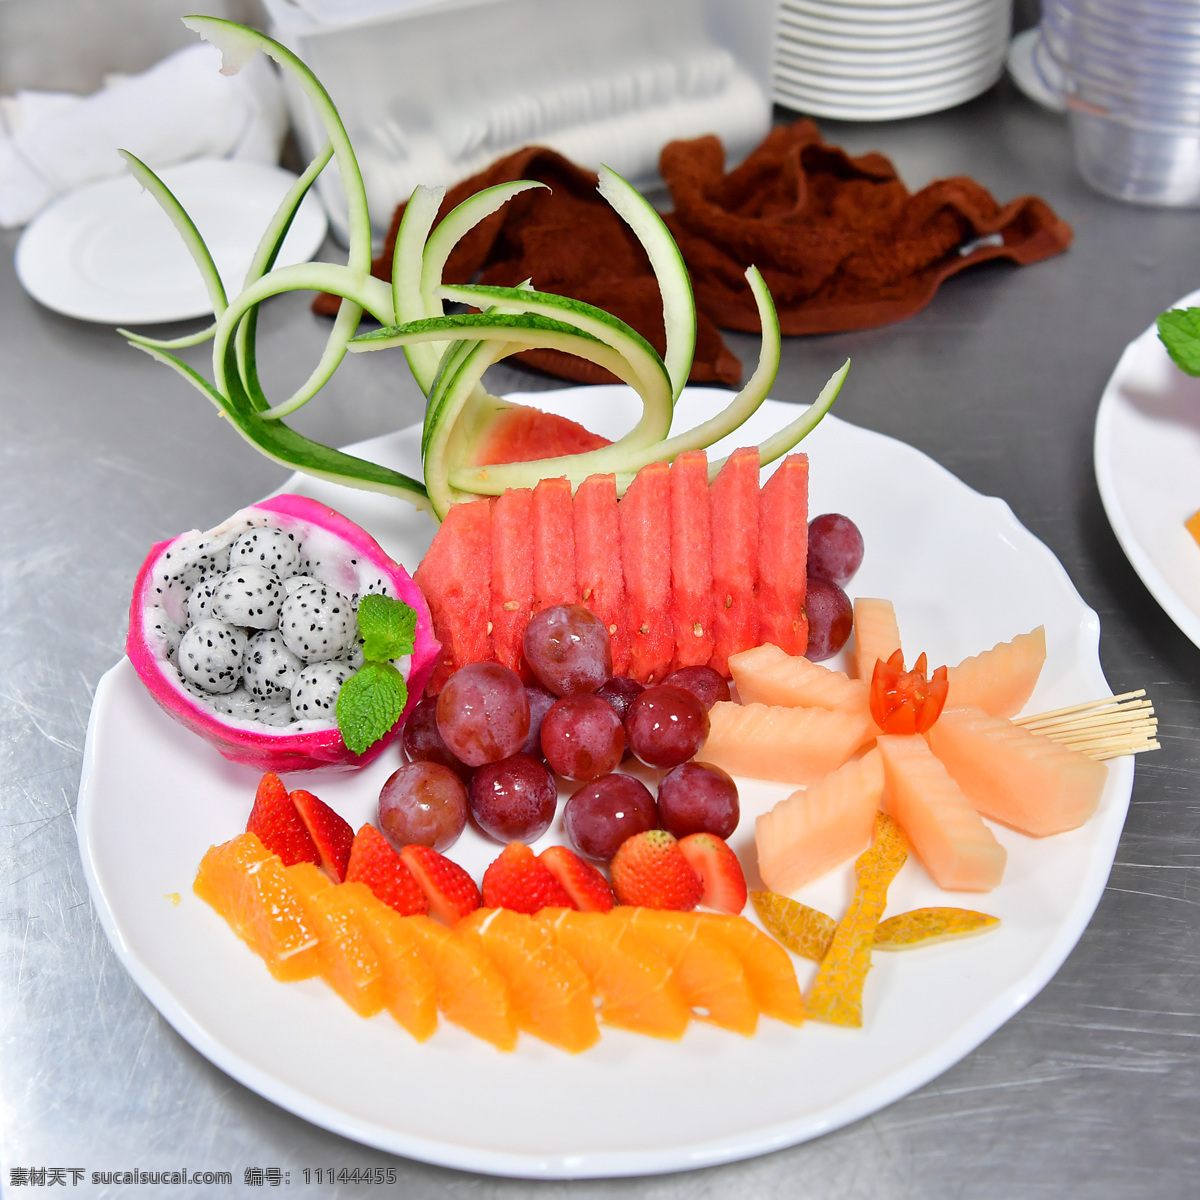 水果拼盘图片 水果 蔬菜 拼盘 水果拼盘 蔬菜沙拉 美食 餐饮美食 传统美食